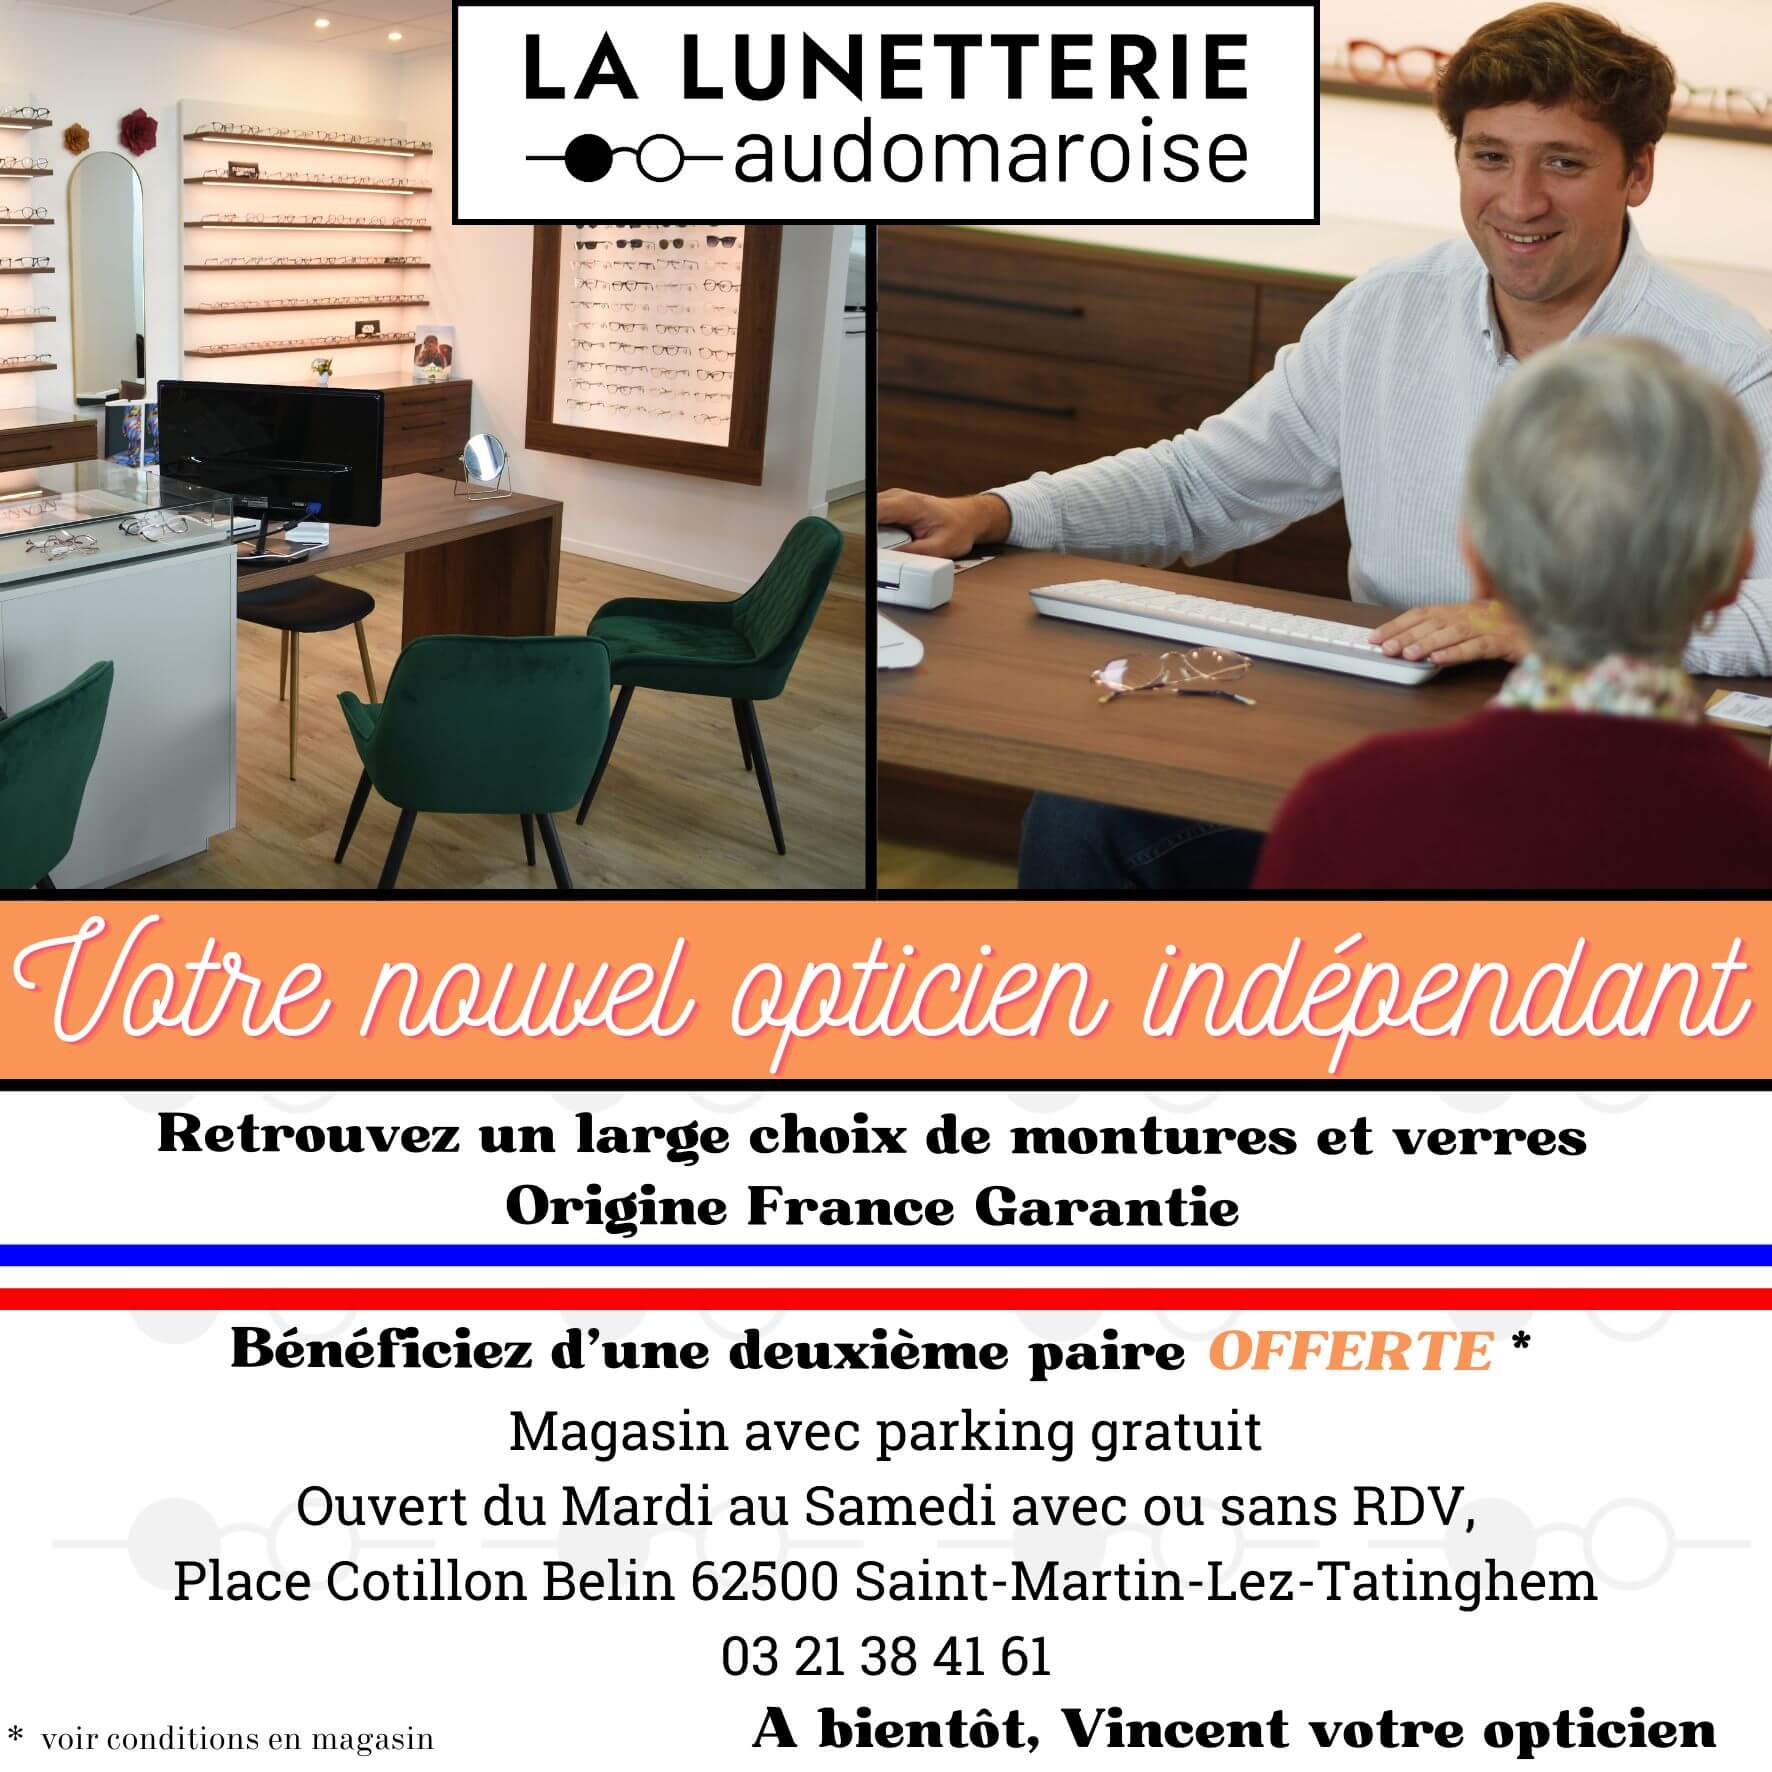 Offre commerciale La Lunetterie Audomaroise seconde paire offerte (optique ou solaire) !